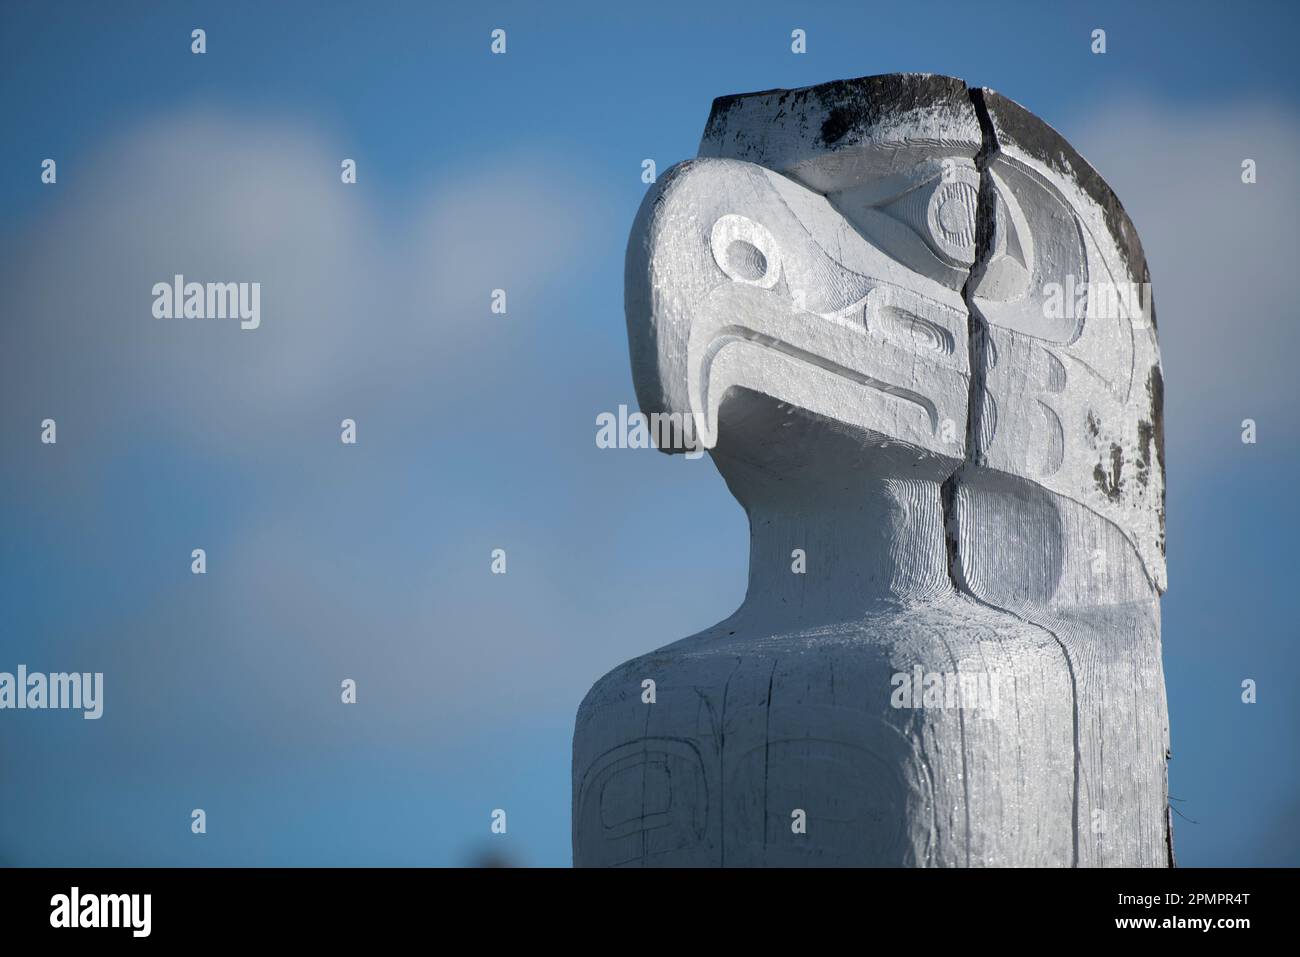 An eagle head on a totem pole Stock Photo - Alamy